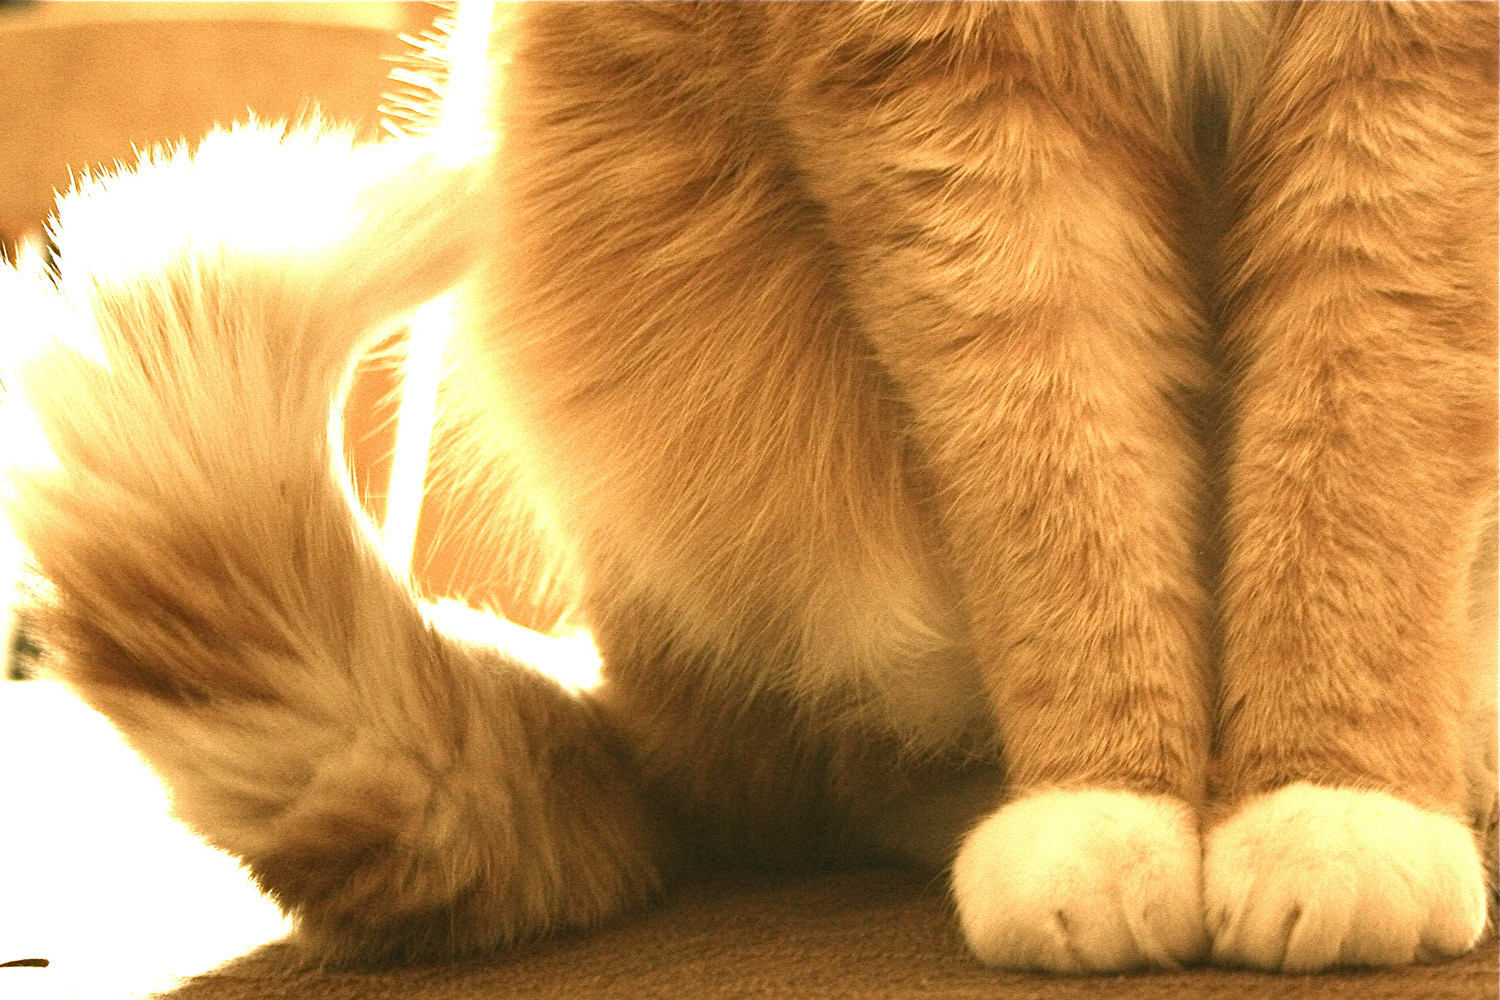 cat-paws